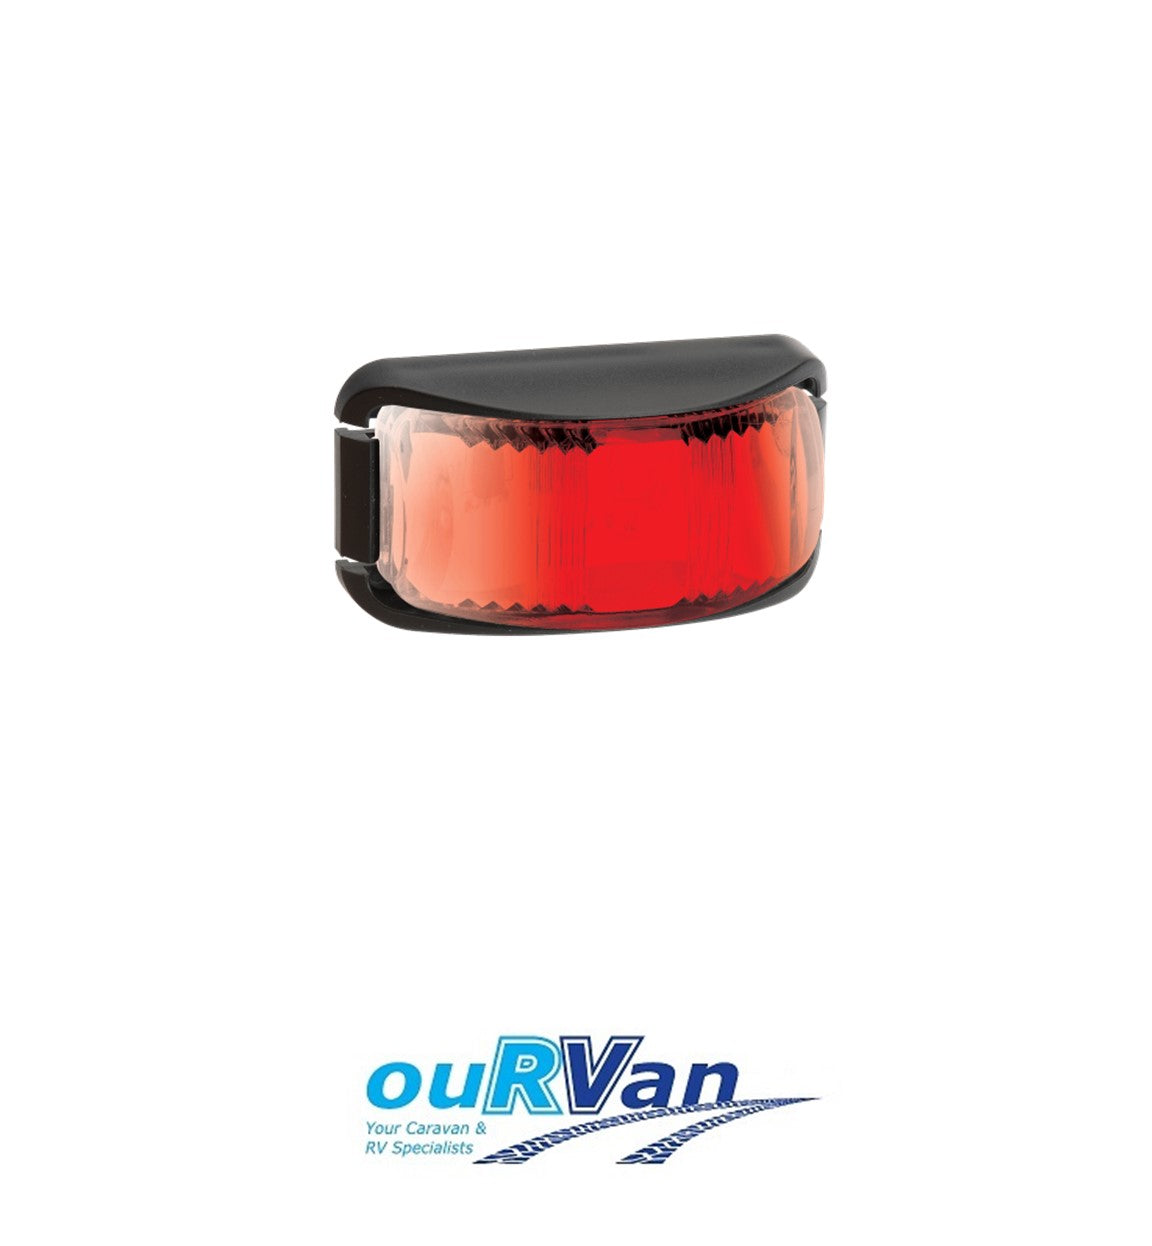 NARVA 9-33 RED LED REAR END OUTLINE MARKER LIGHT 91632BL